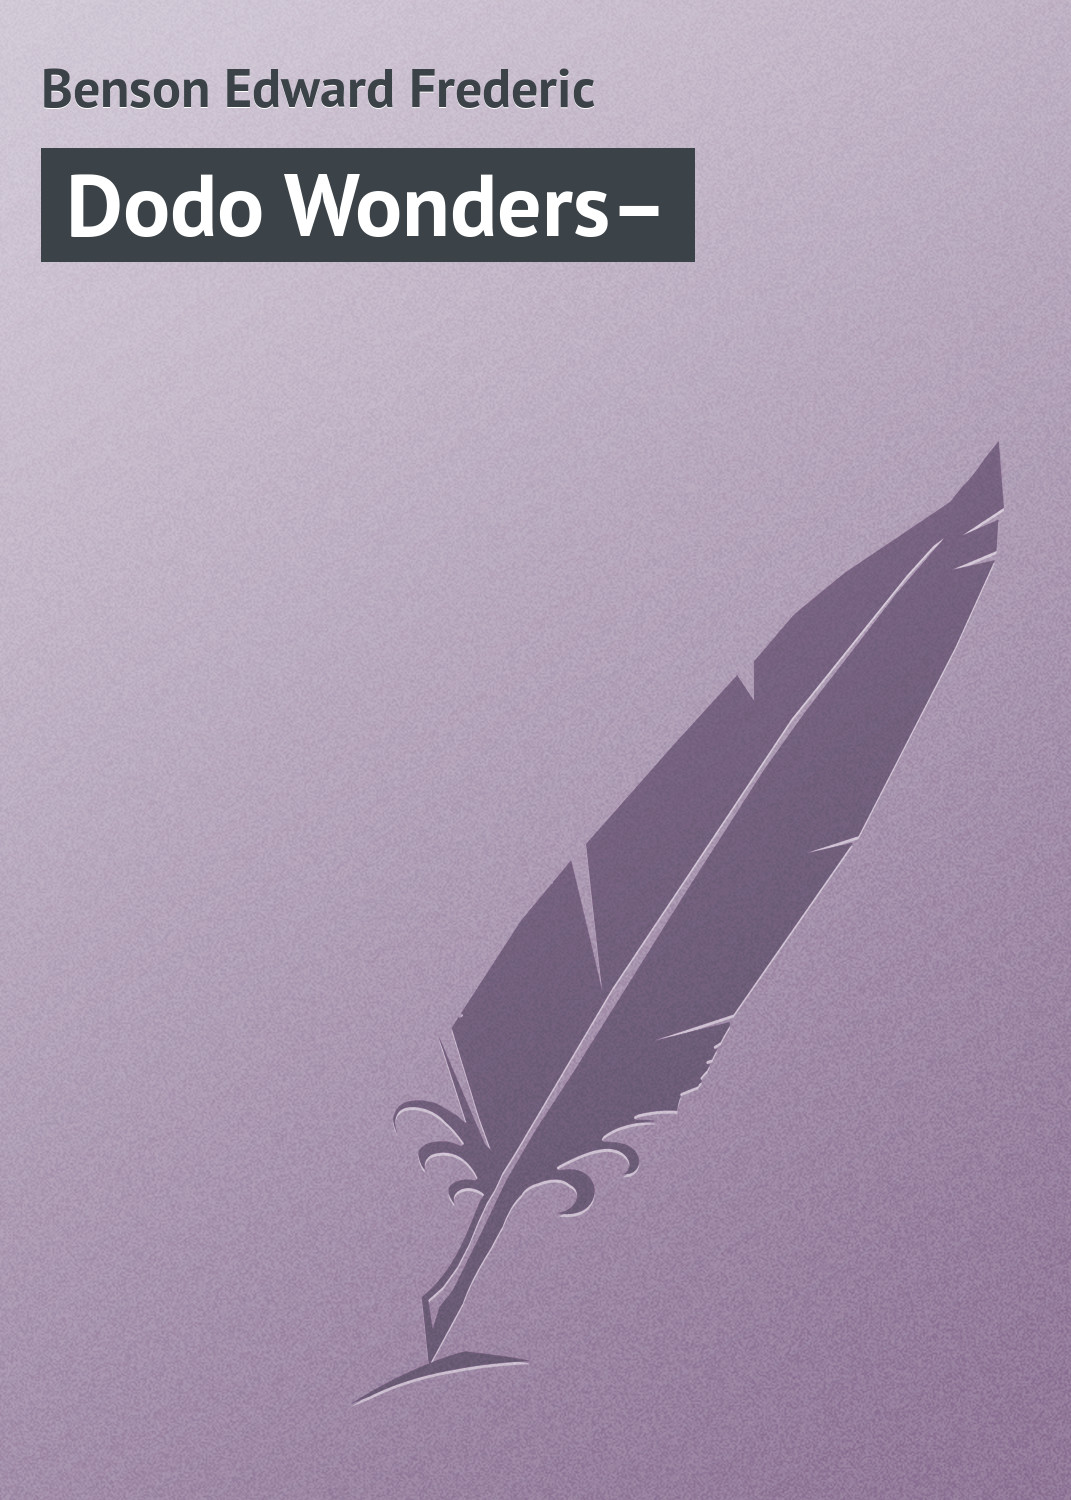 Книга Dodo Wonders– из серии , созданная Edward Benson, может относится к жанру Зарубежная классика. Стоимость электронной книги Dodo Wonders– с идентификатором 23160139 составляет 5.99 руб.